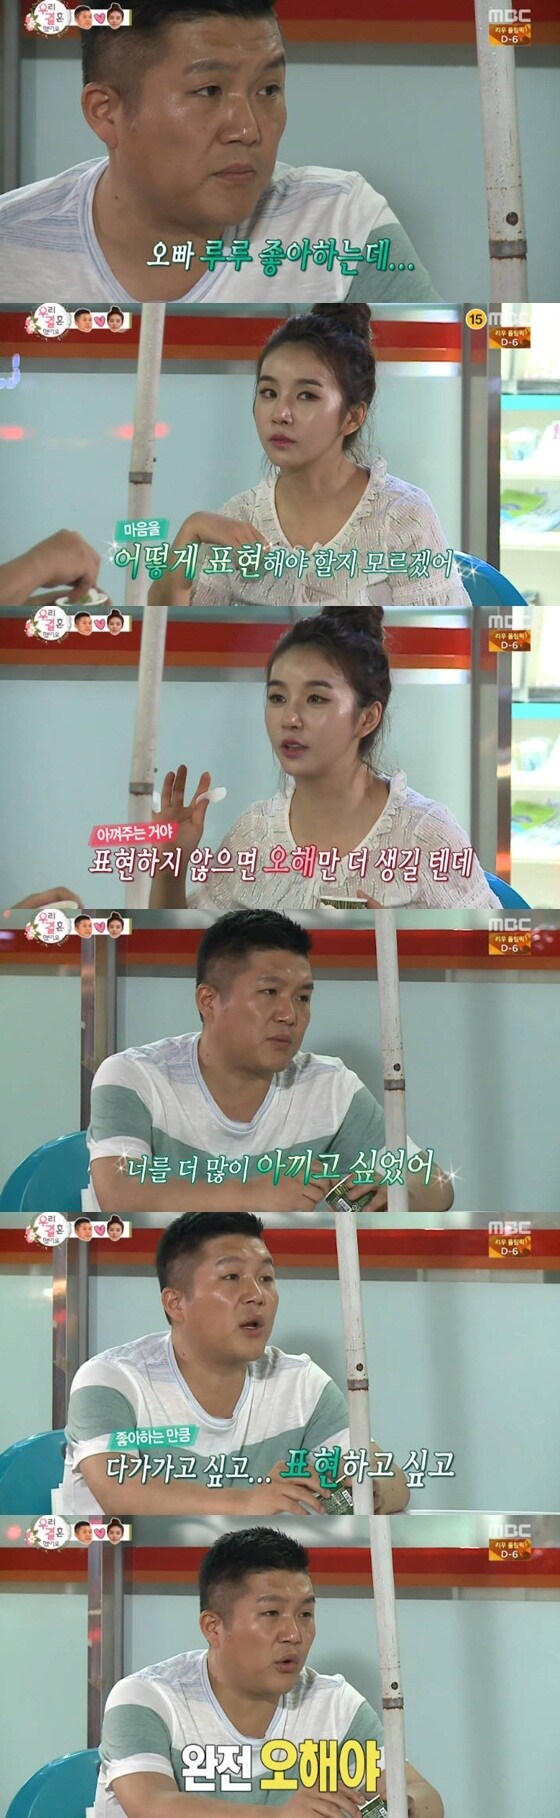 조세호와 차오루가 진심 어린 대화를 나눴다. ⓒ News1star / MBC '우리 결혼했어요 시즌4' 캡처